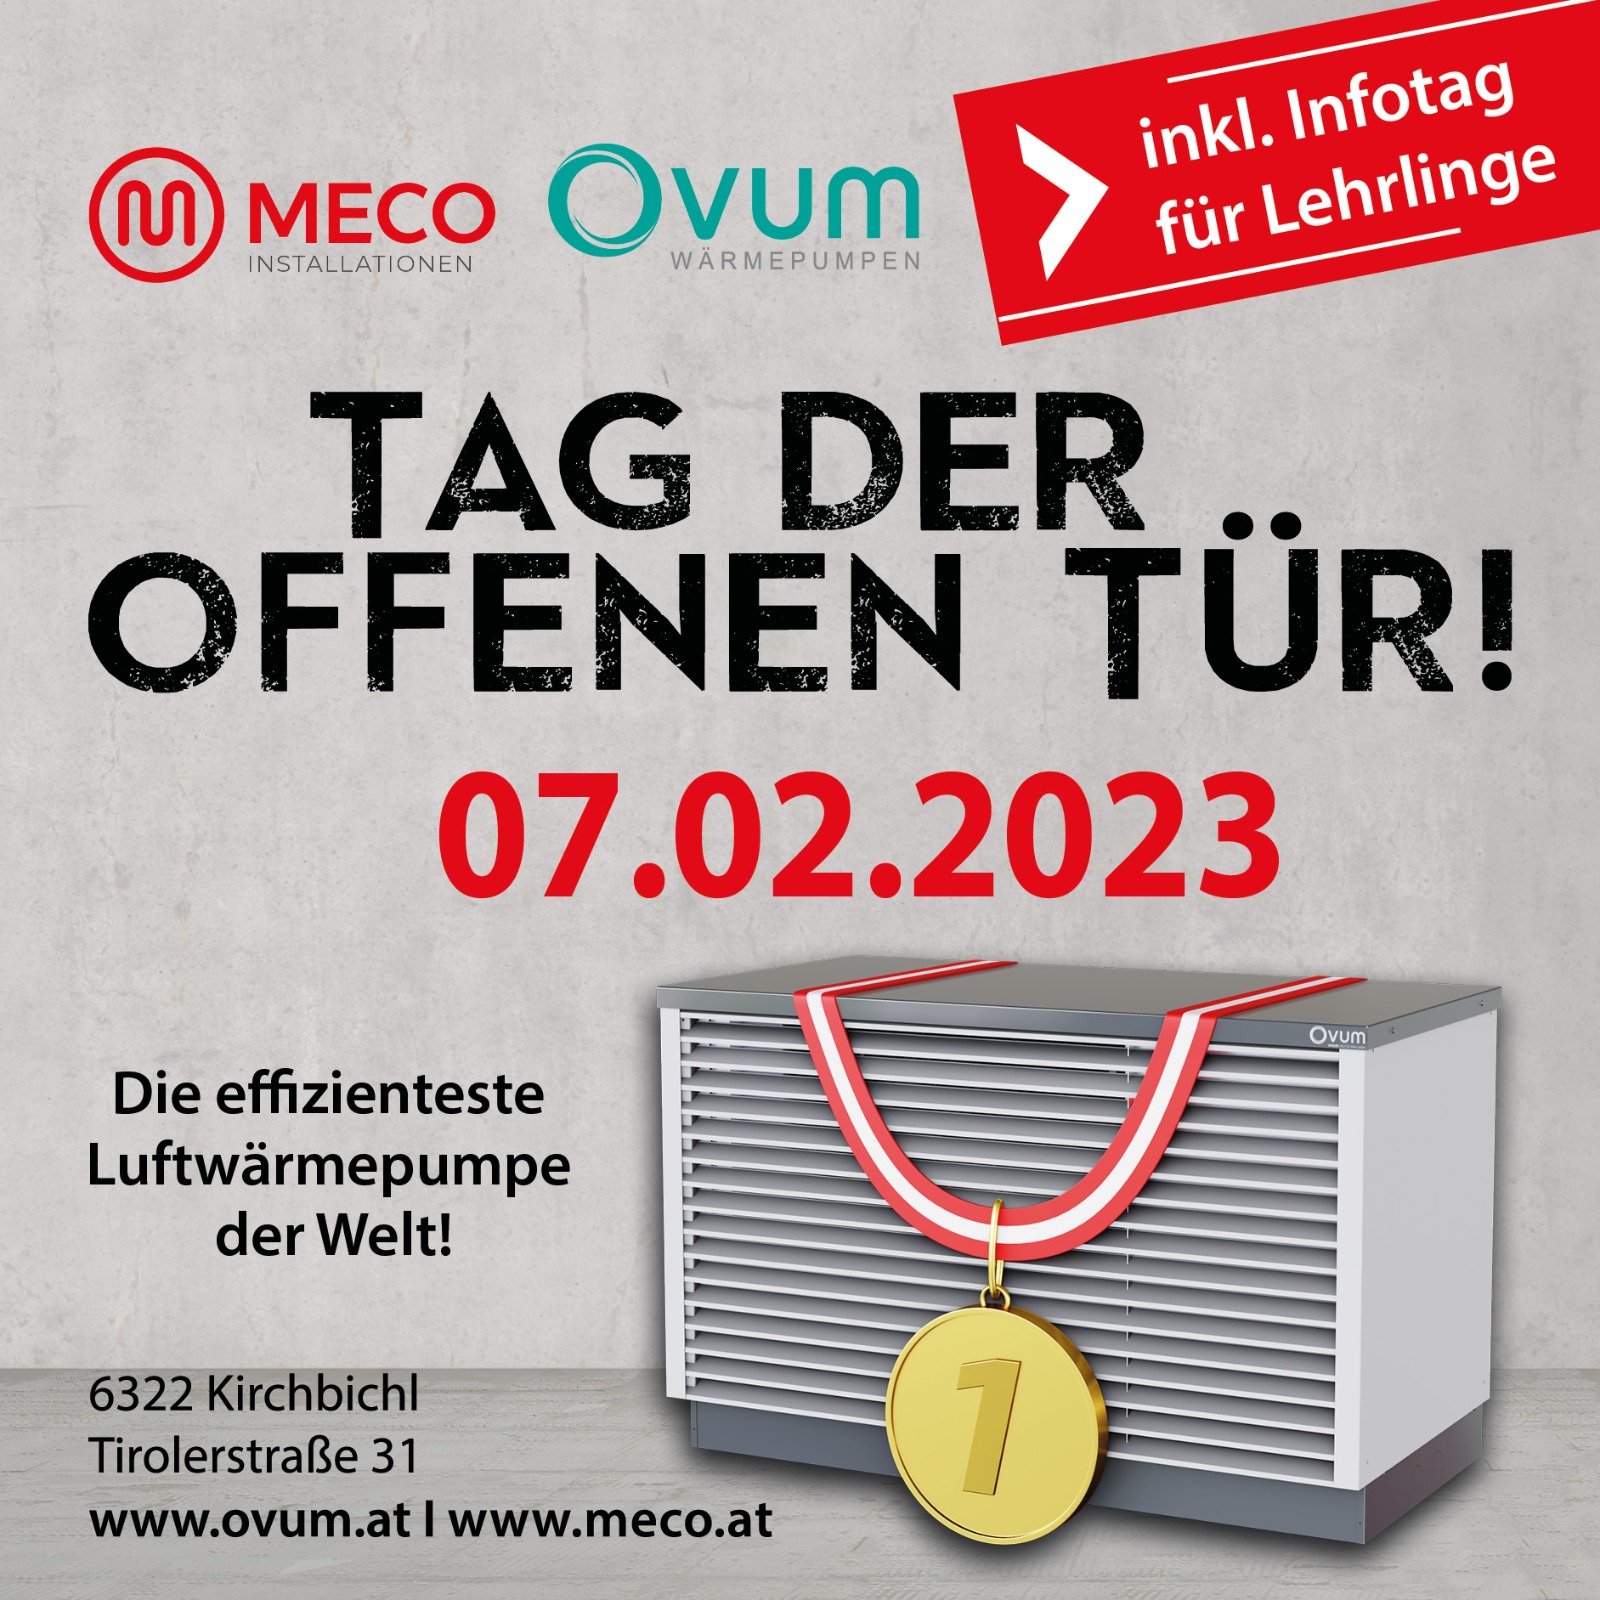 MECO OVUM Wärmepumpen und Erdwärme Tirol - Informationen